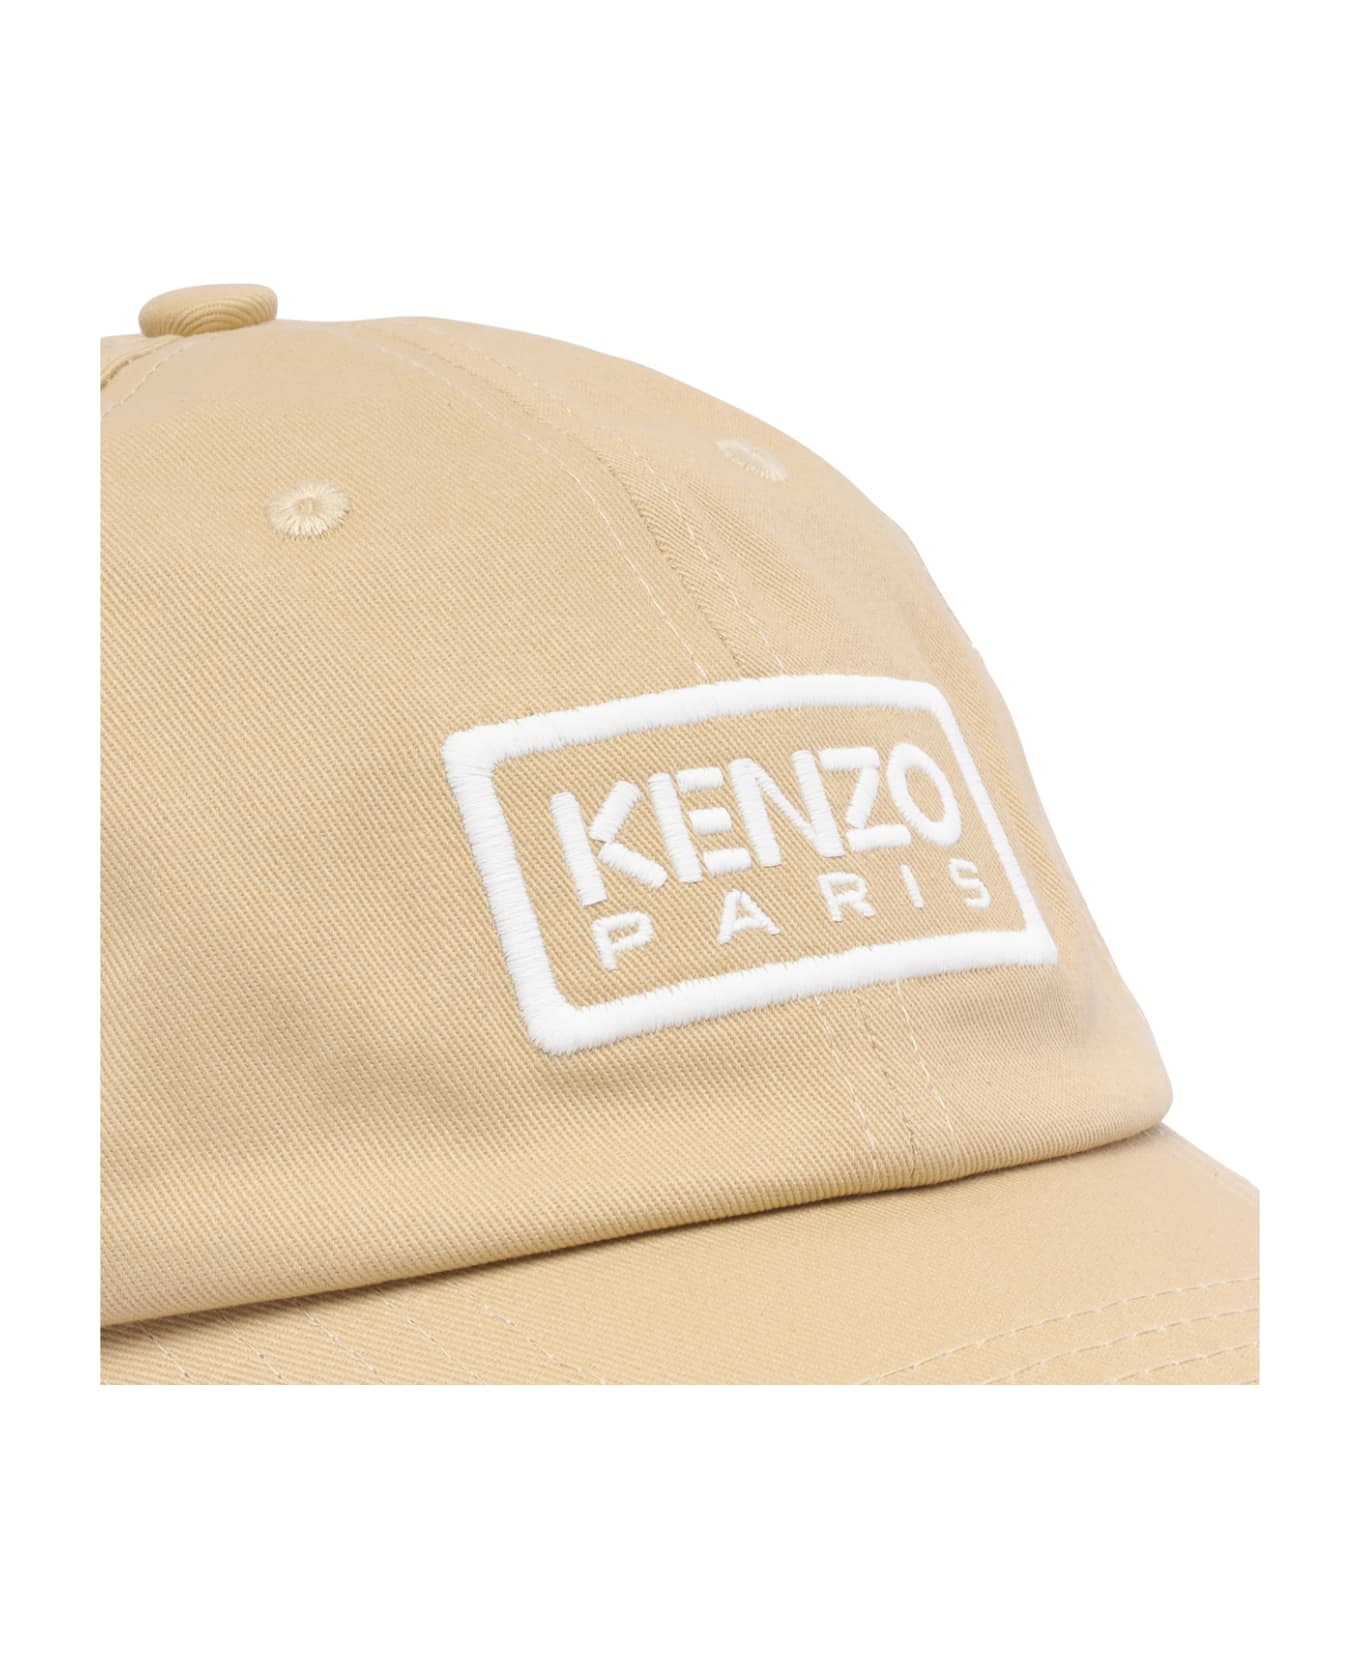 Kenzo Paris Baseball Cap - Beige